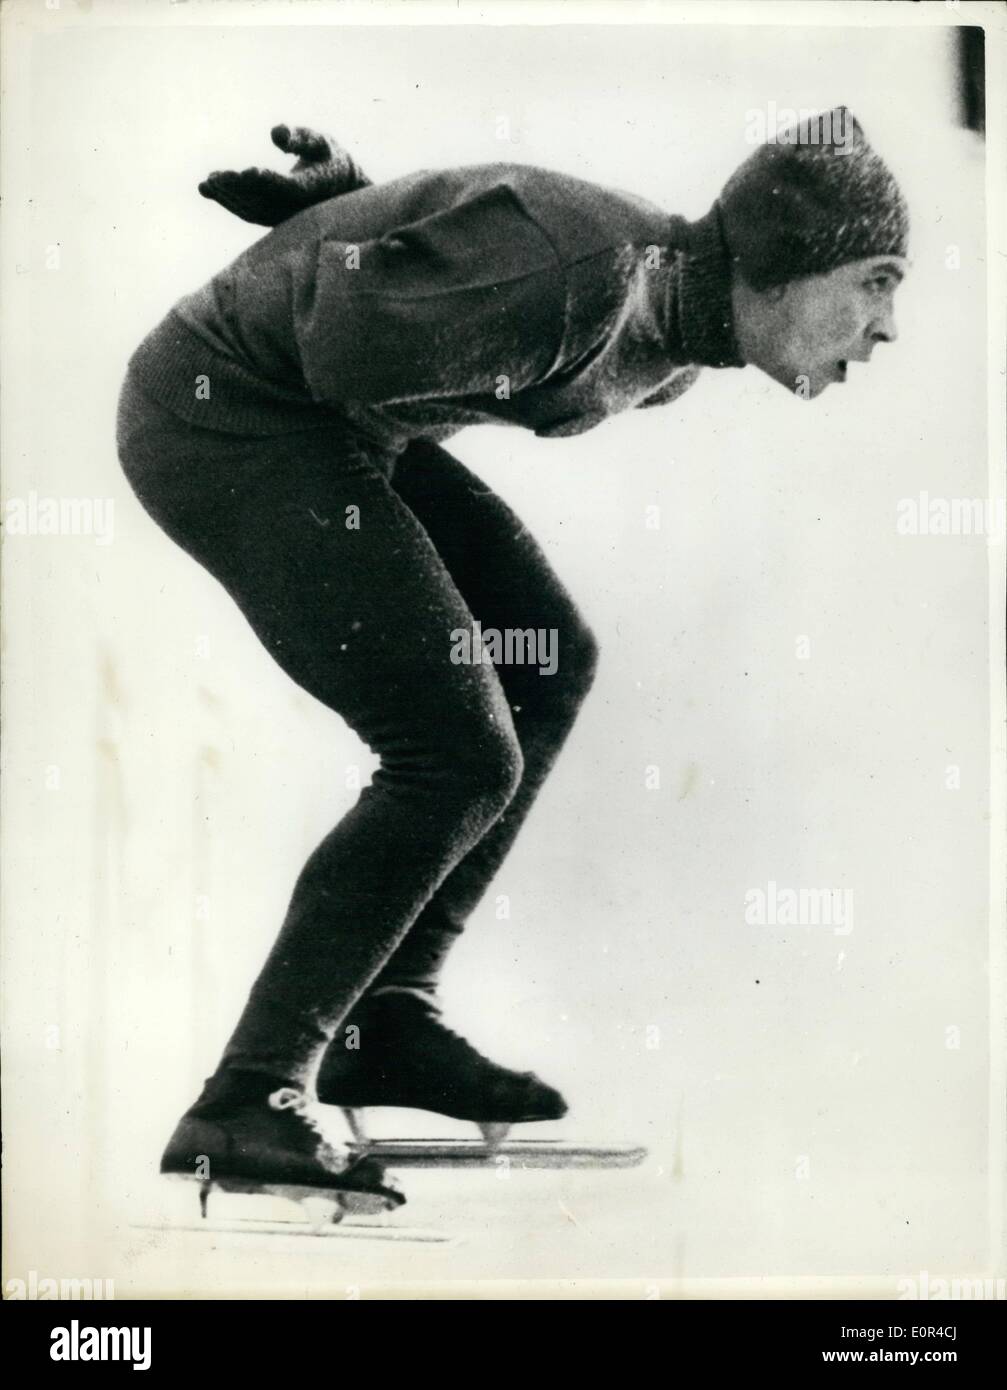 2. Februar 1958 - One-Armed-Russisch-Skater gewinnt Silbermedaille in Helsinki: V. Shilikovski, Russlands, der hat nur einen Arm - gesehen mit Geschwindigkeit während der Eiskunstlauf-Weltmeisterschaft in Helsinki am Sonntag, als er belegte den zweiten Platz und gewann die Silbermedaille. Stockfoto